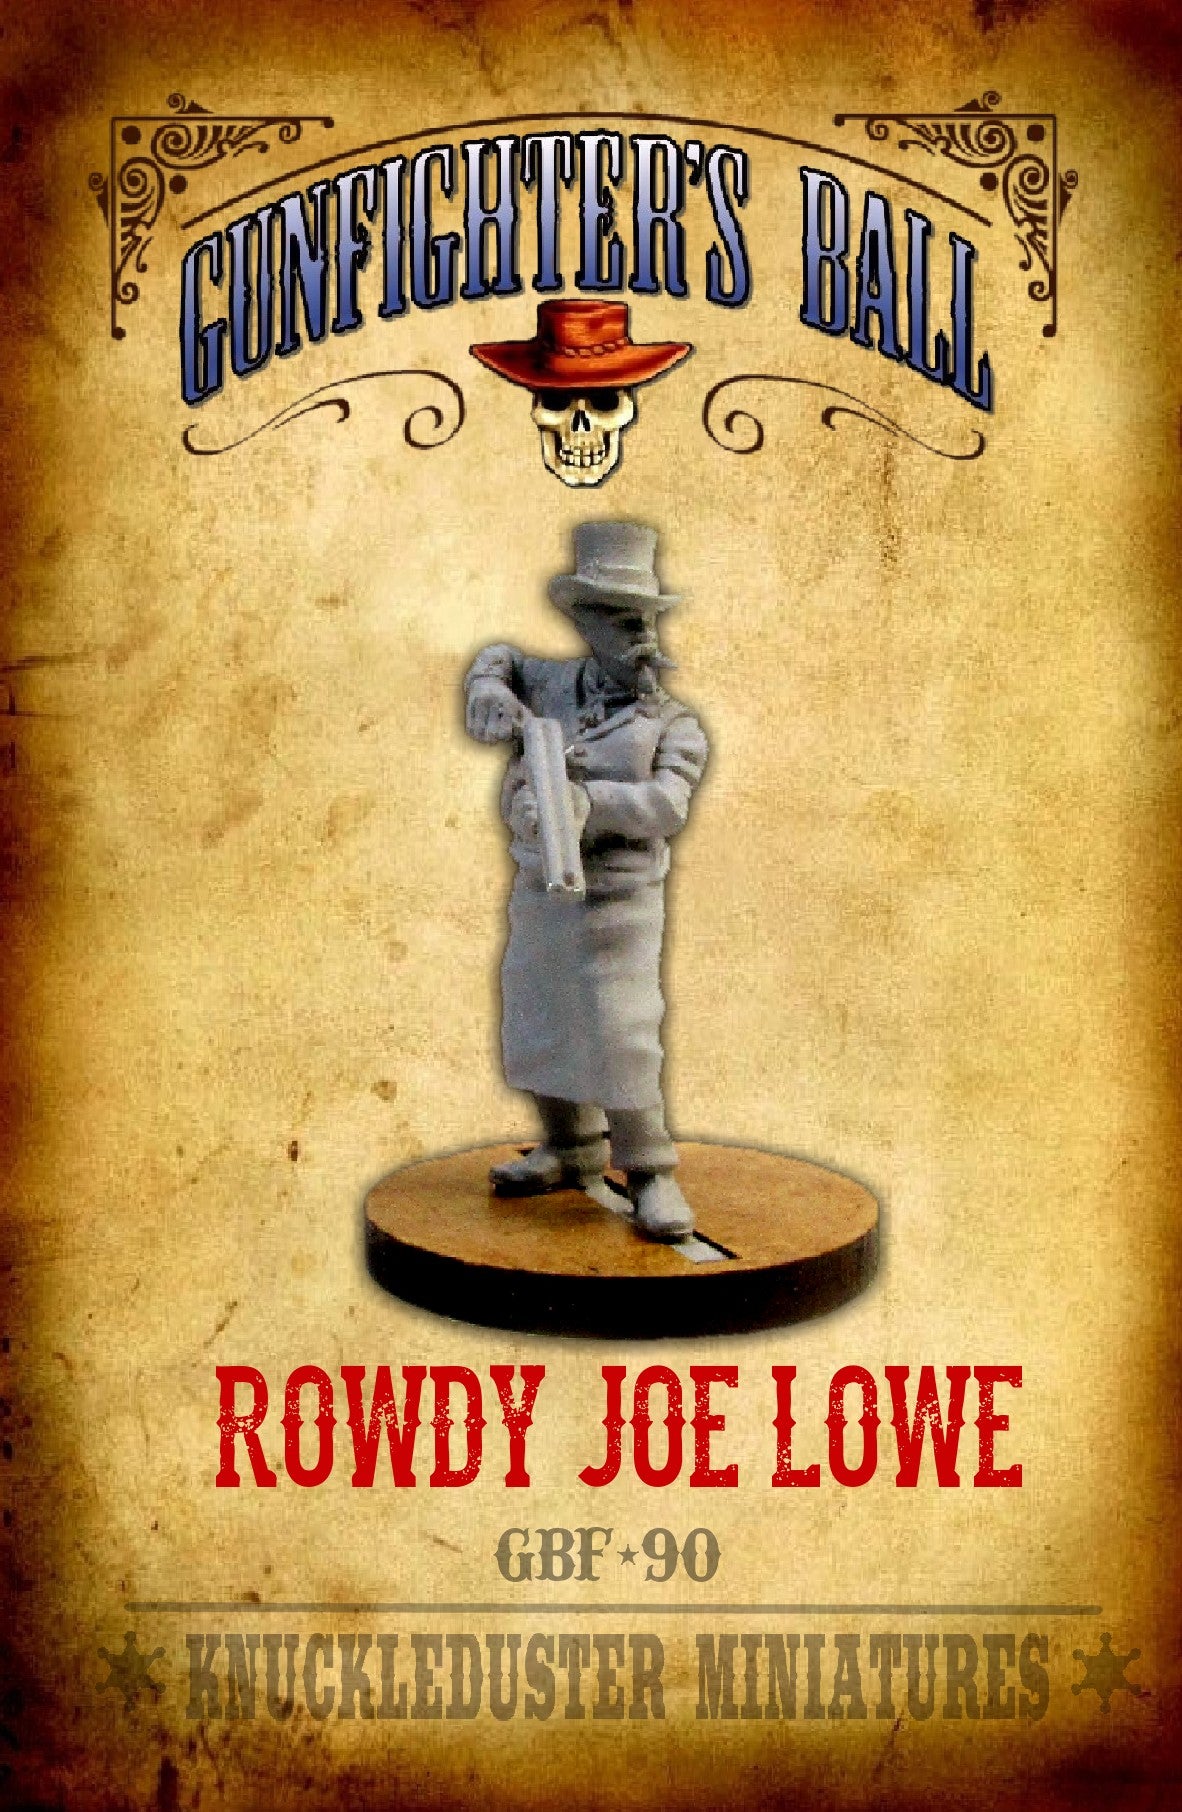 Rowdy Joe Lowe